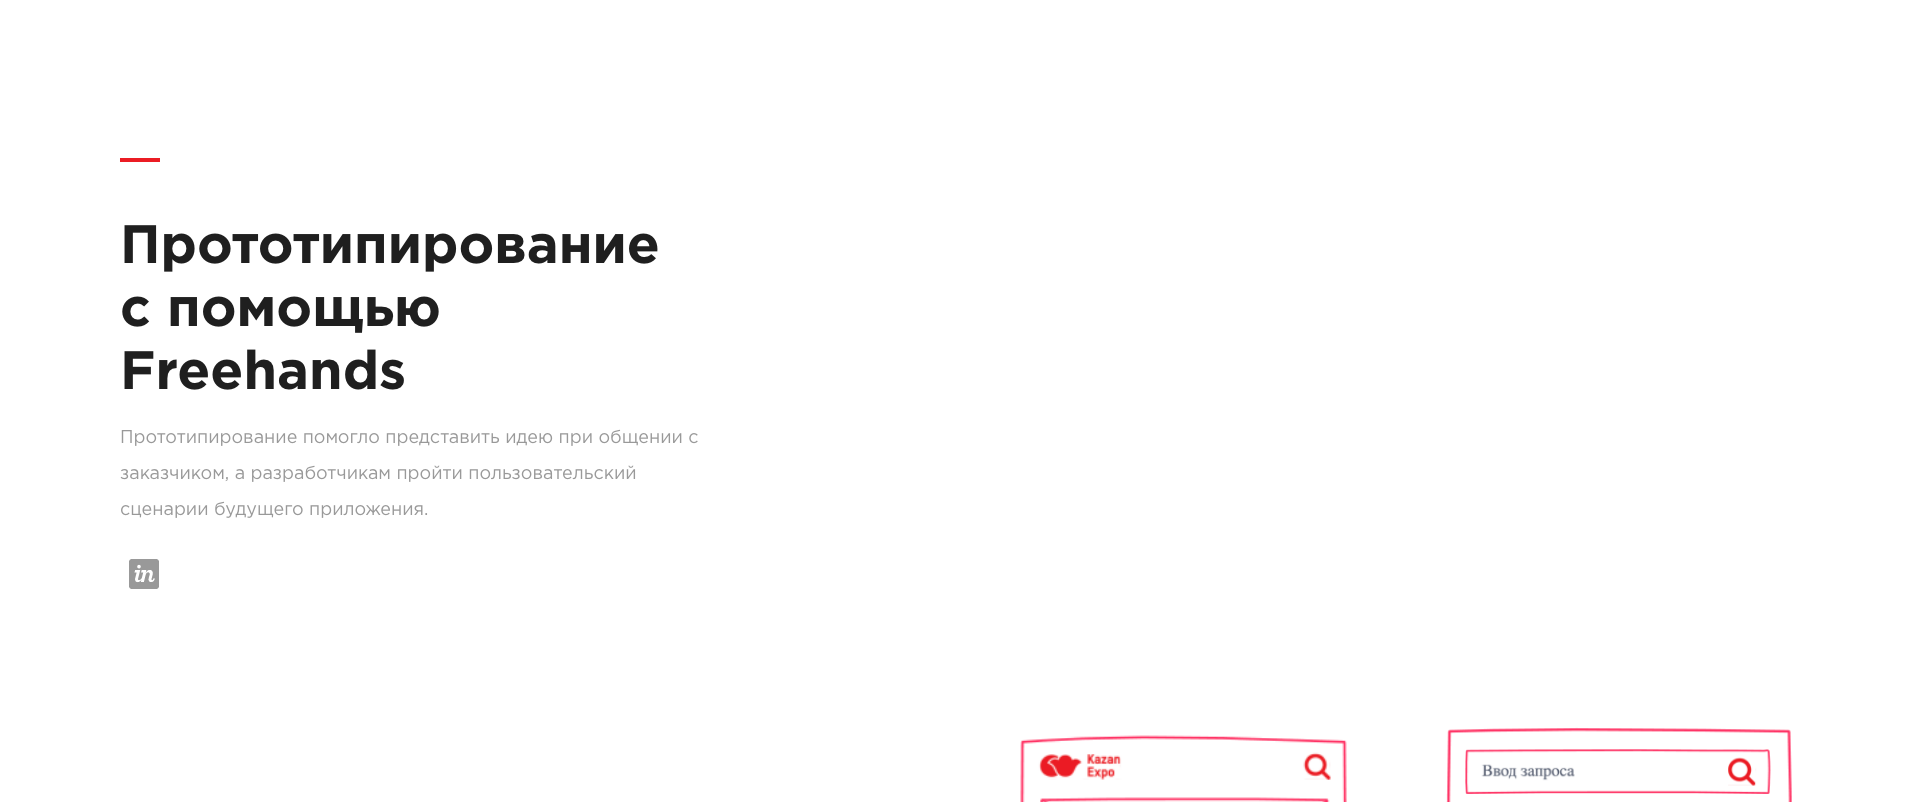 Казань Экспо – мобильное приложение — Изображение №6 — Интерфейсы на Dprofile